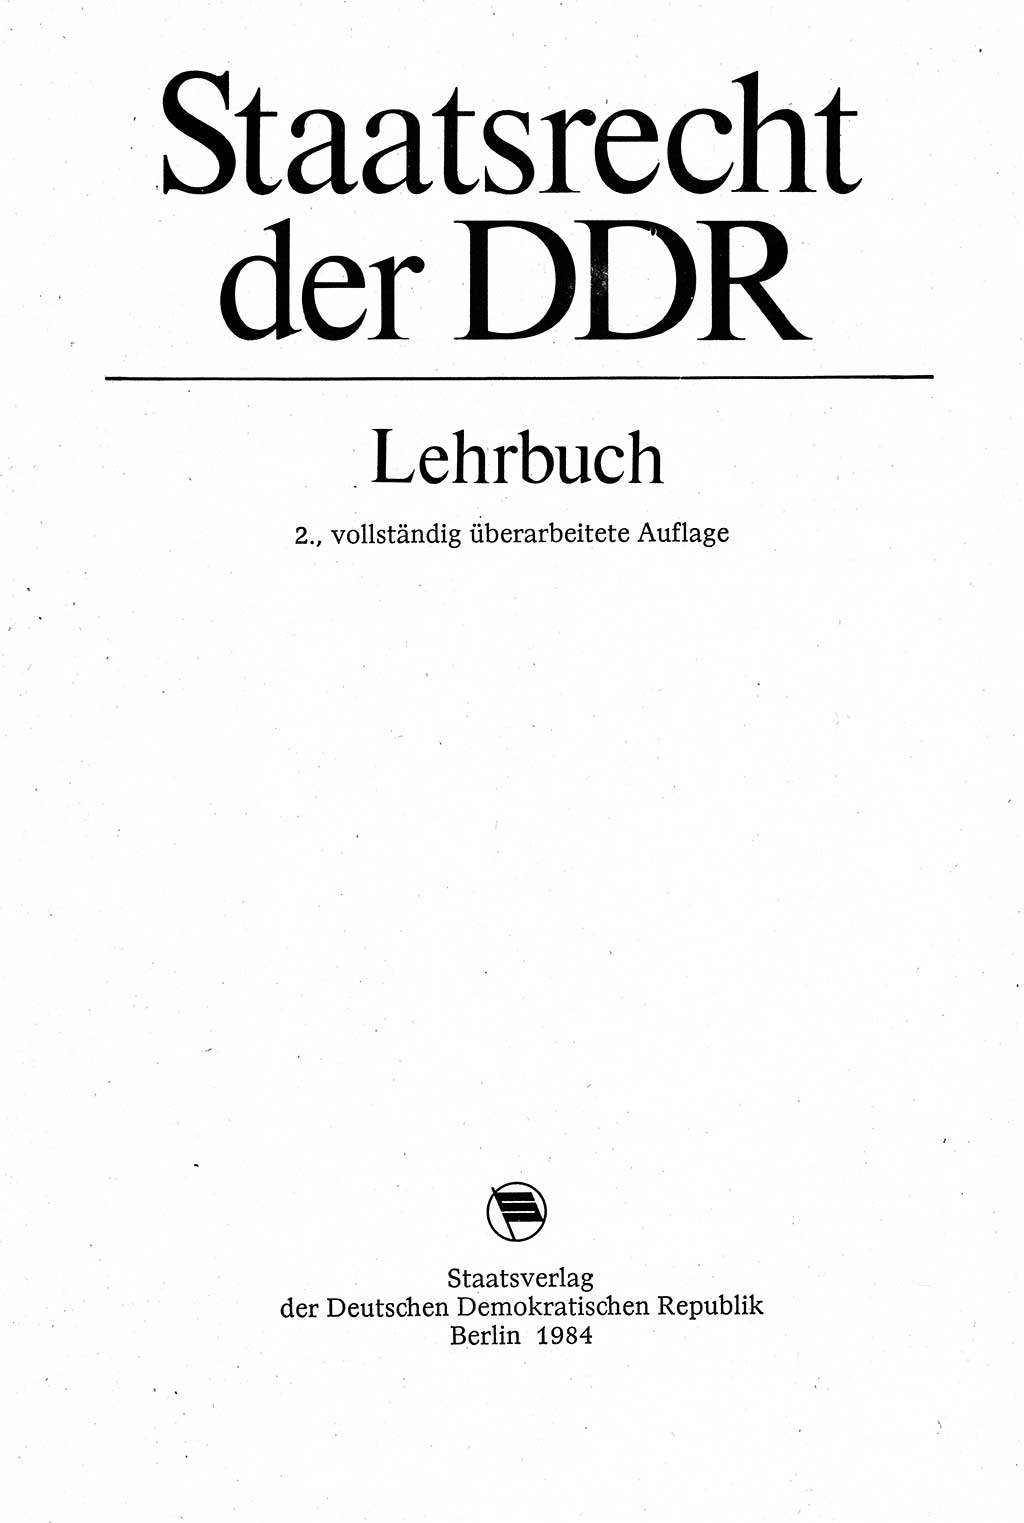 Staatsrecht der DDR [Deutsche Demokratische Republik (DDR)], Lehrbuch 1984, Seite 3 (St.-R. DDR Lb. 1984, S. 3)